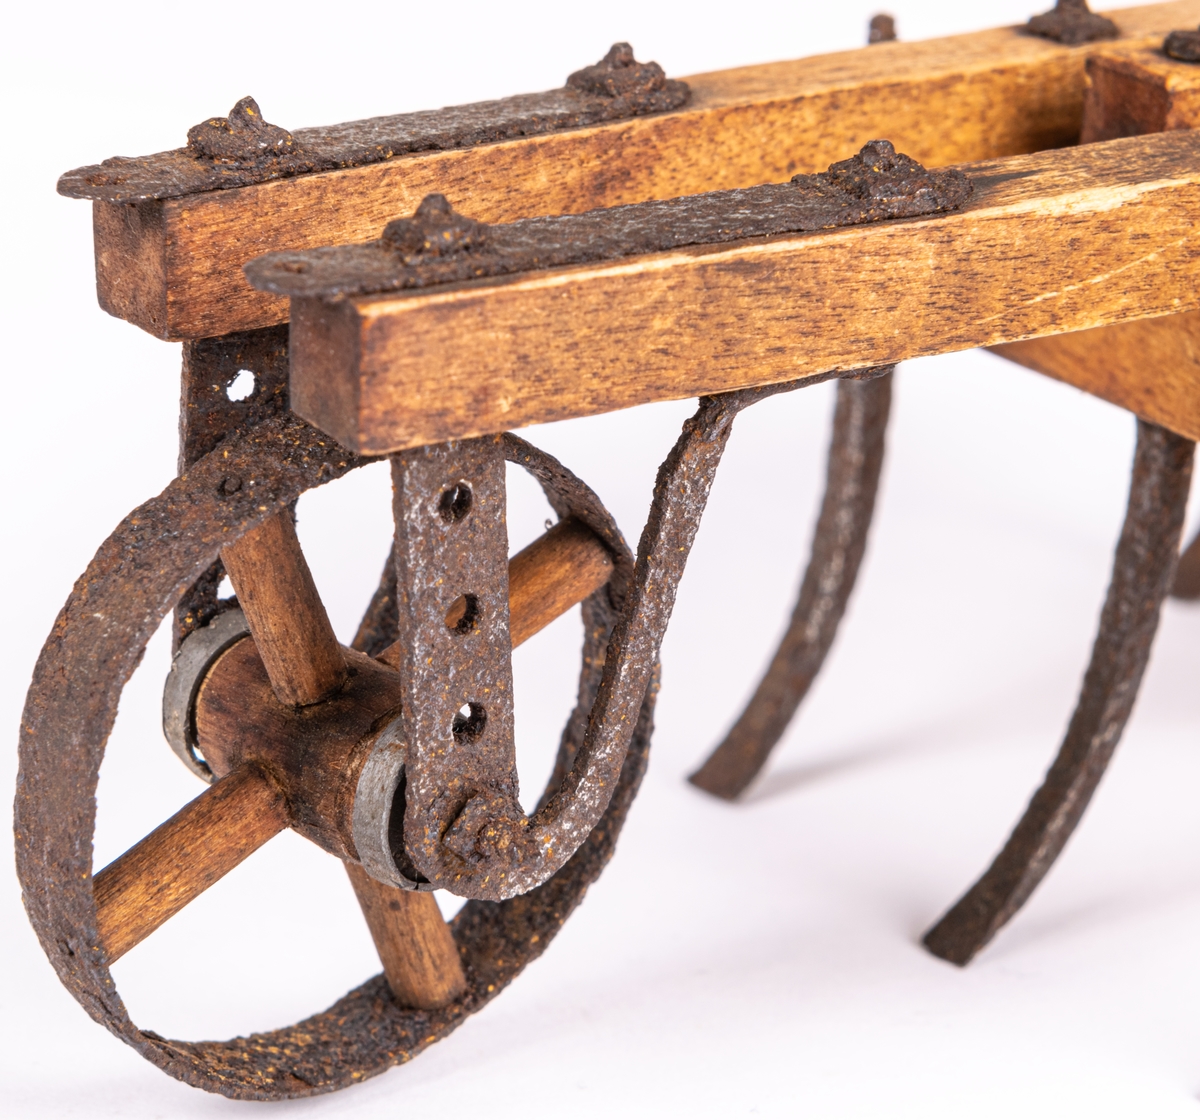 Modell till exstirpator, kallad klösharv, med hjul, åkerbruksredskap. Fyrsidig ram av träbalkar, sture av trä, två framåtriktade åsar, 7 stycken harvjärn i balkramen. Modellens längd 23,5.